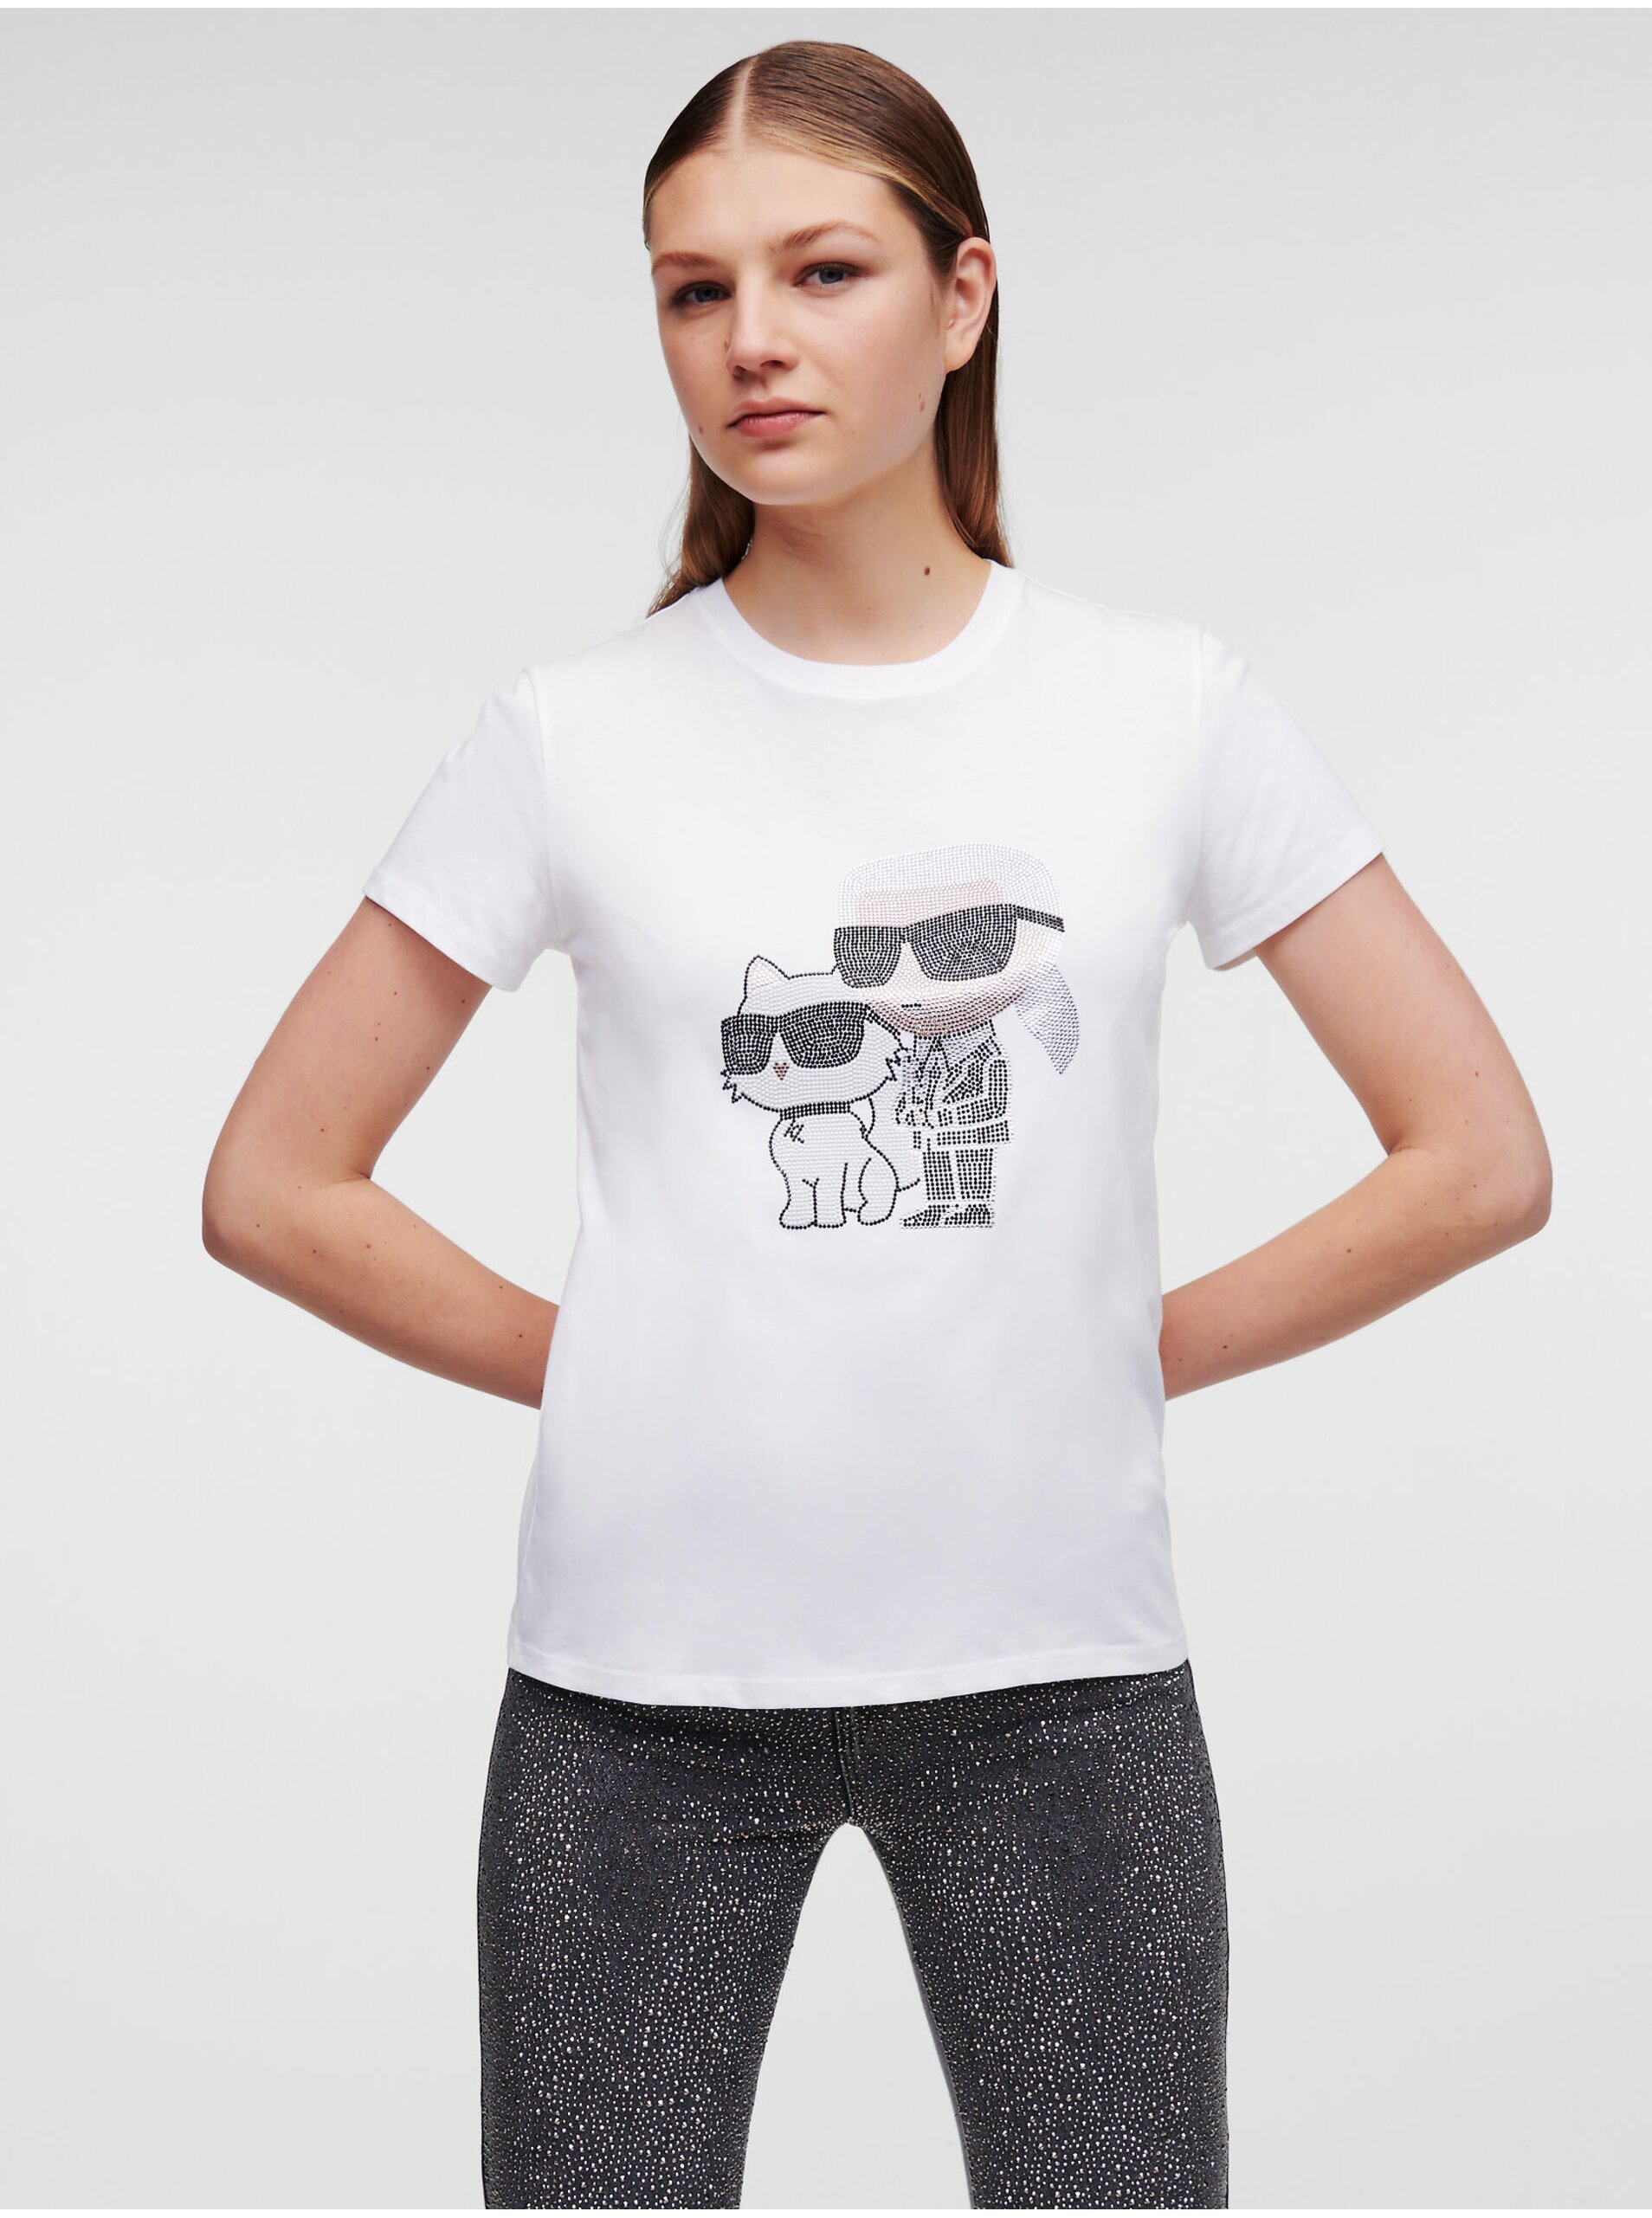 E-shop Bílé dámské tričko KARL LAGERFELD Ikonik 2.0